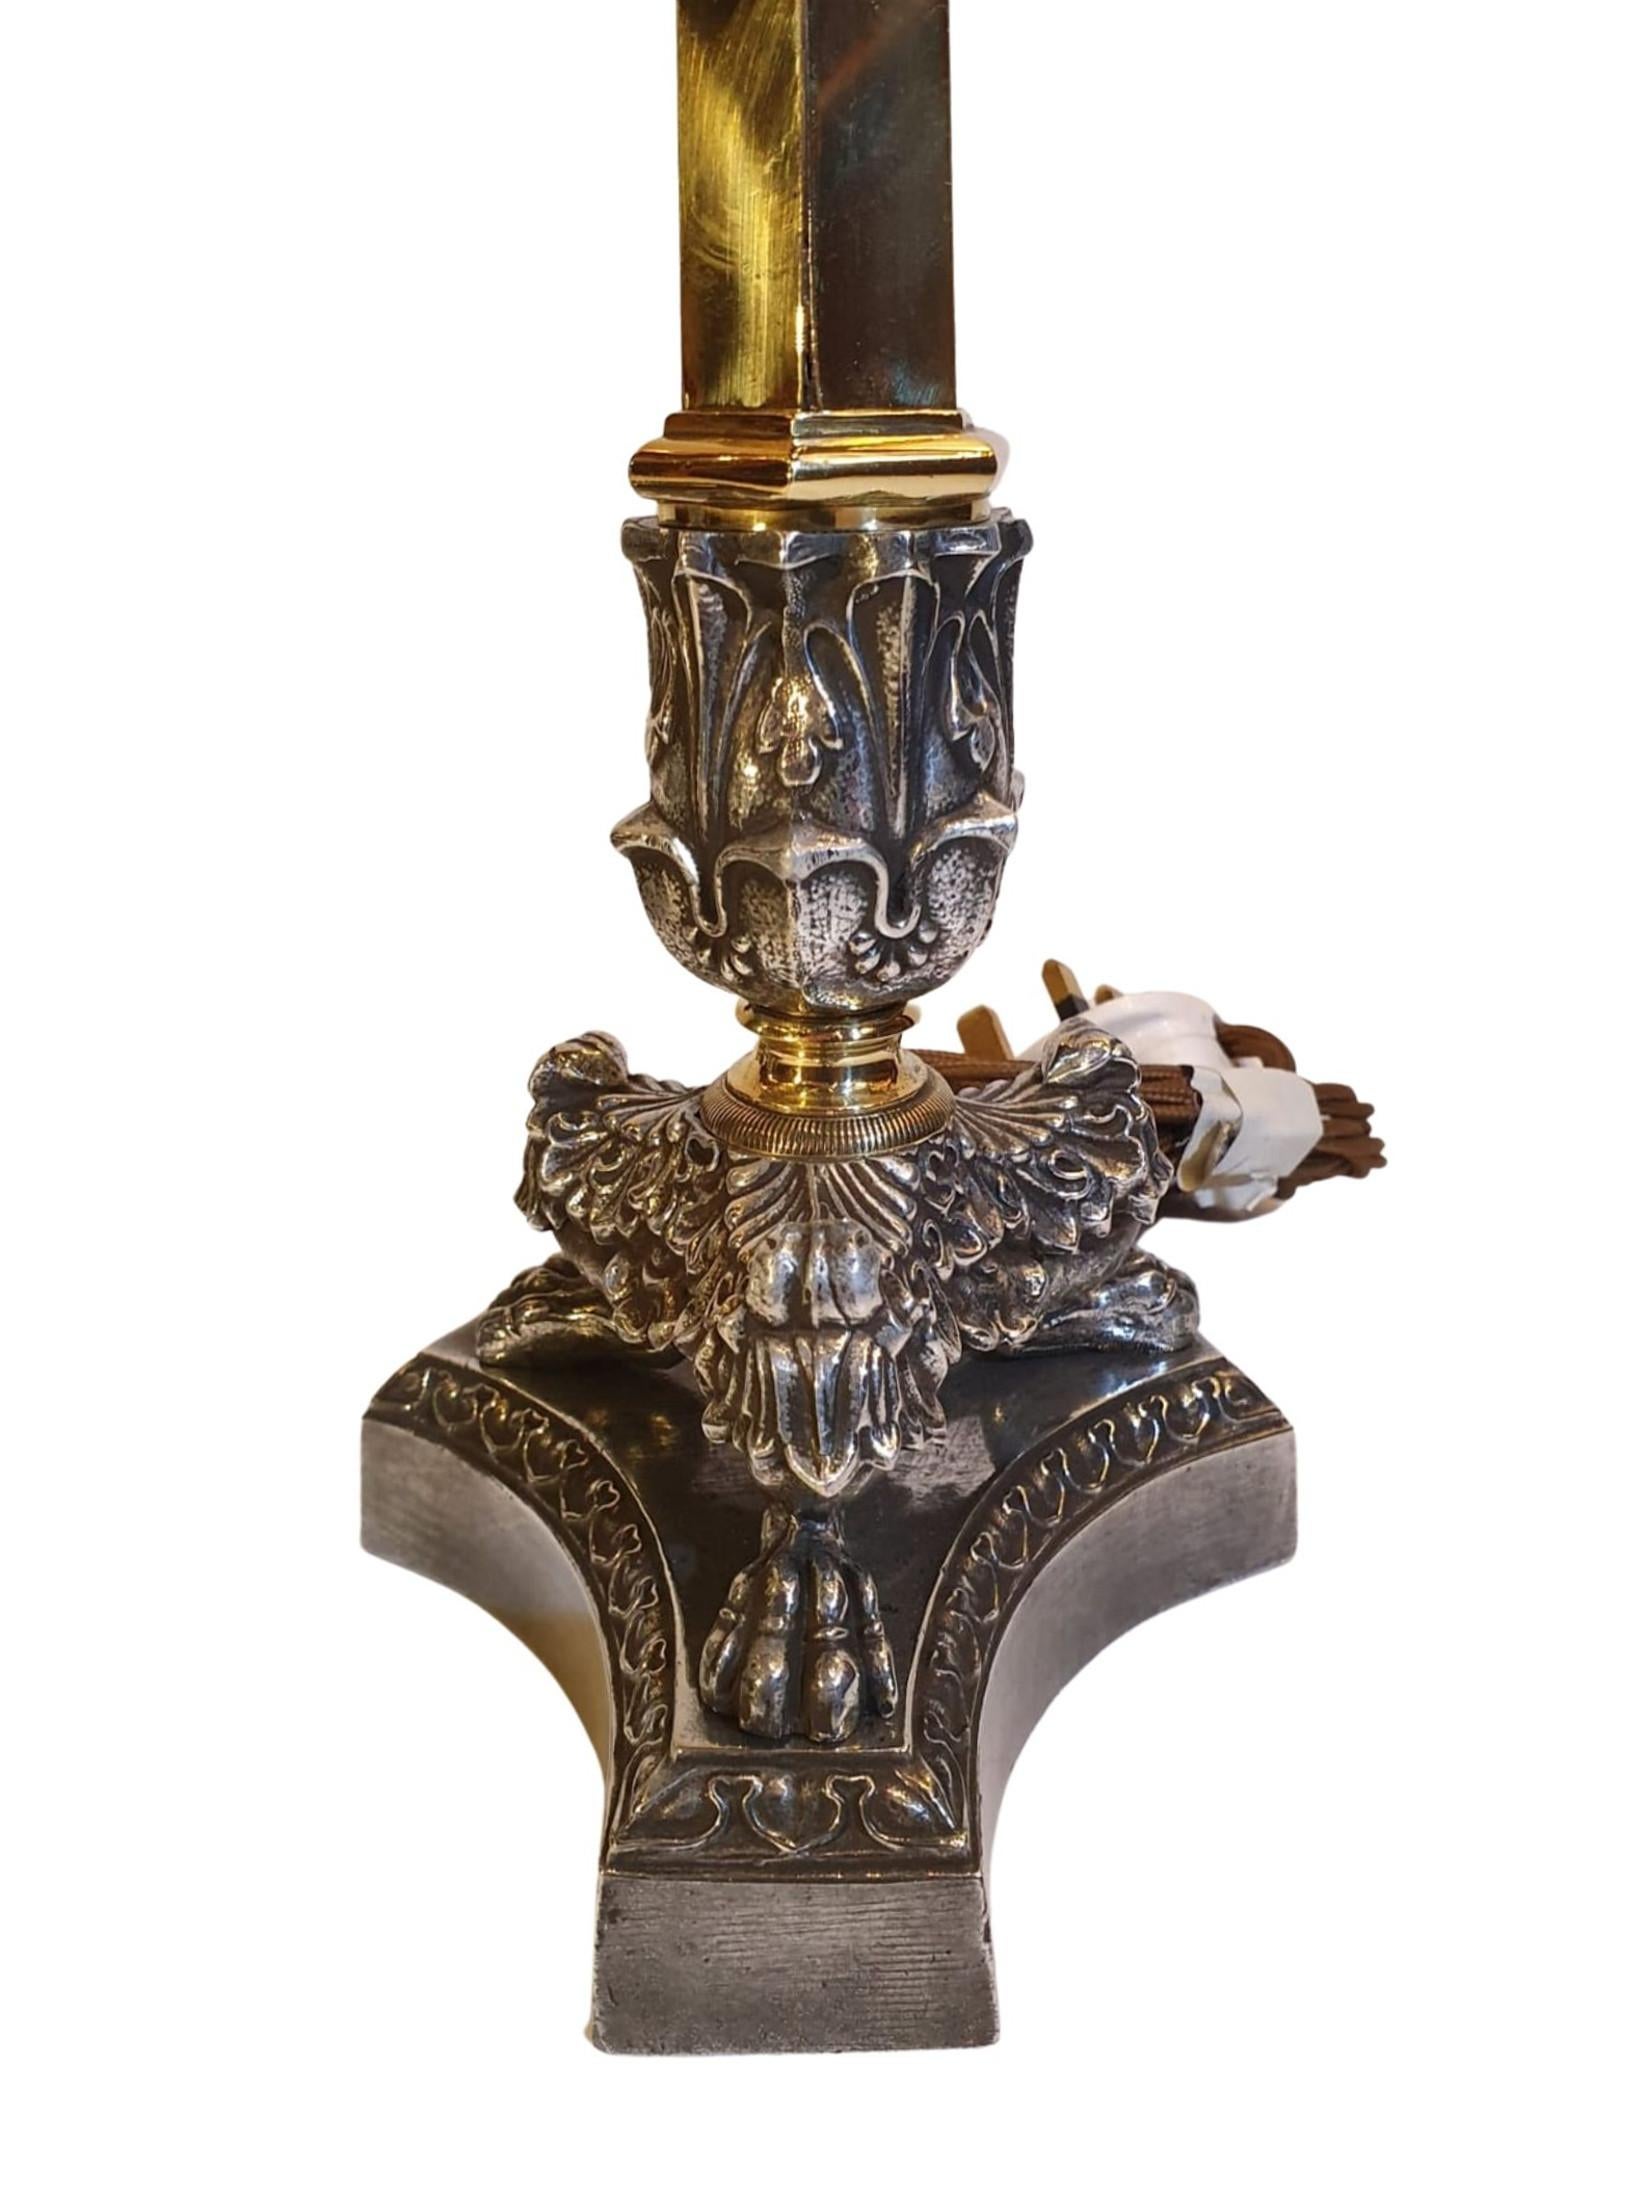 Une superbe paire de chandeliers de style Empire du XIXe siècle en laiton et acier poudré transformés en lampes de table. Magnifiquement décoré de détails ornés de feuilles d'acanthe en relief sur une tige de colonne hexagonale avec des détails de